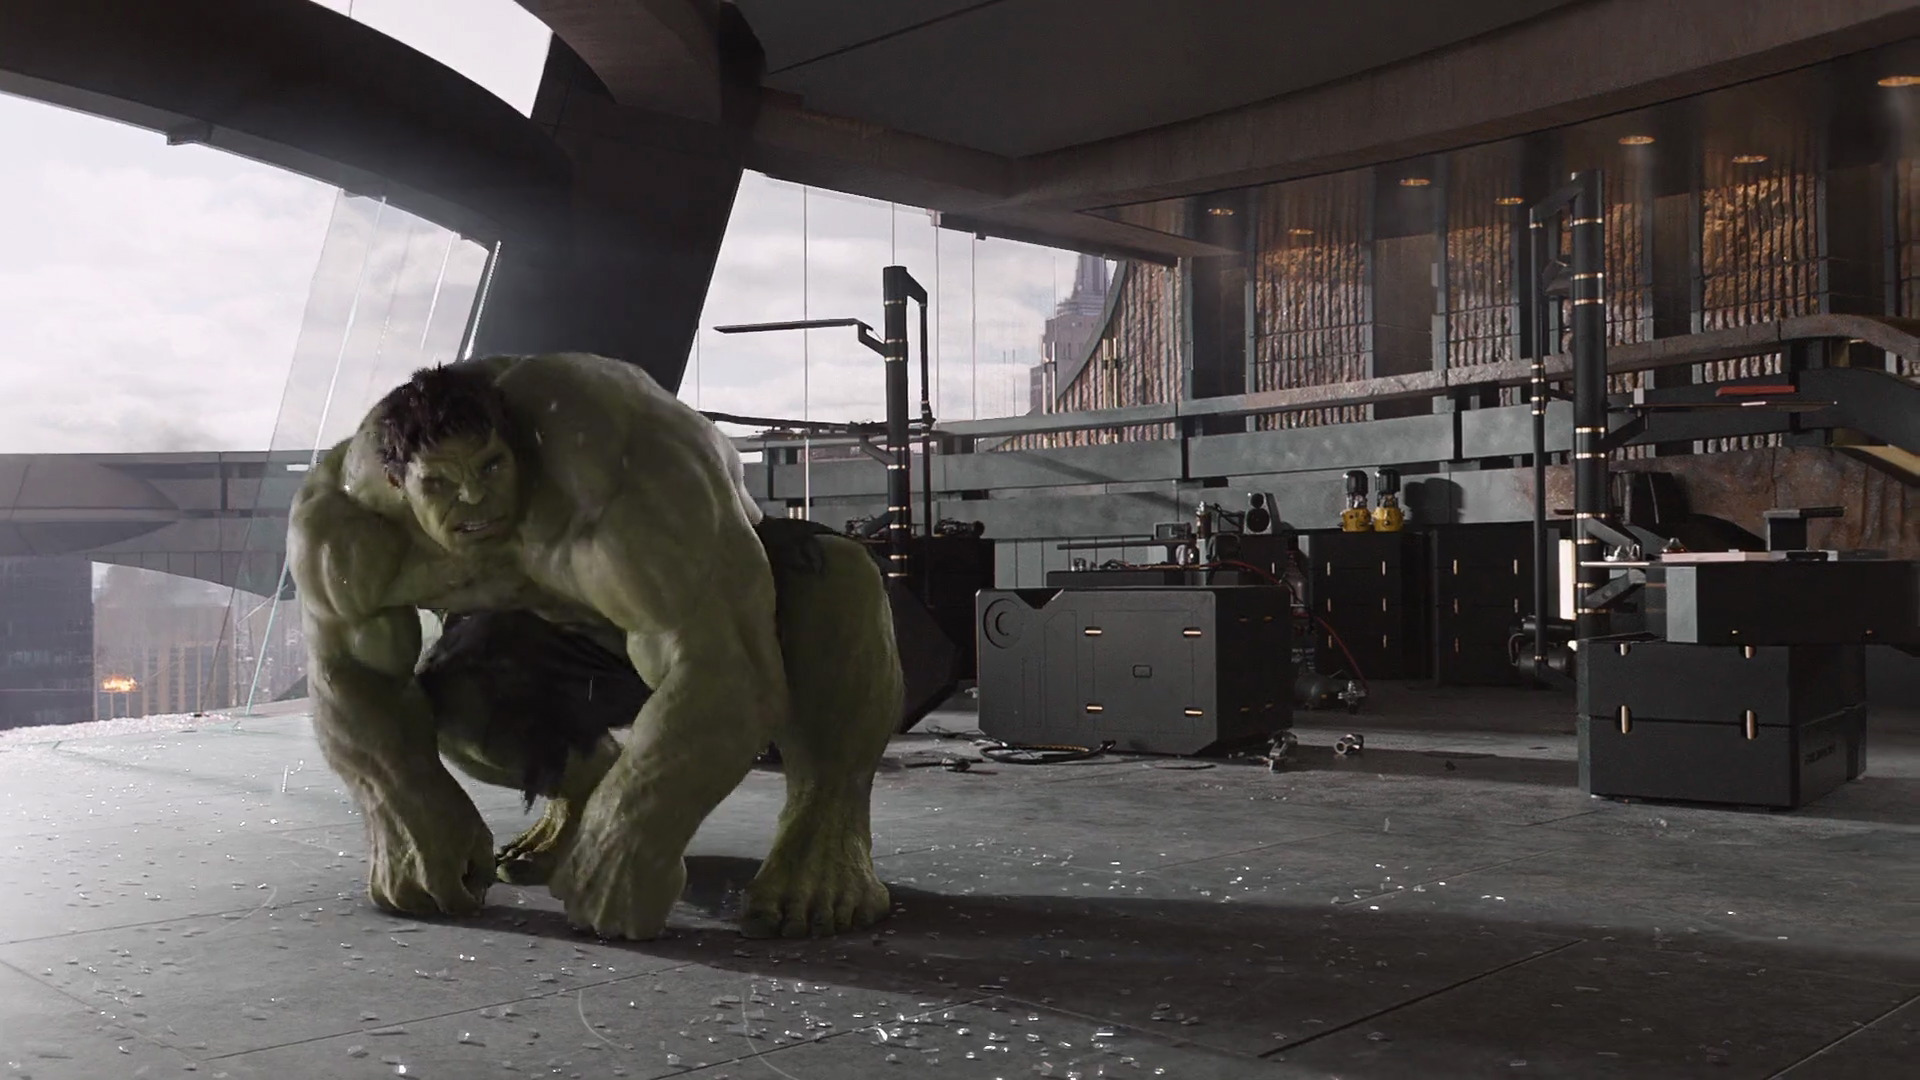 Hulk in The Avengers